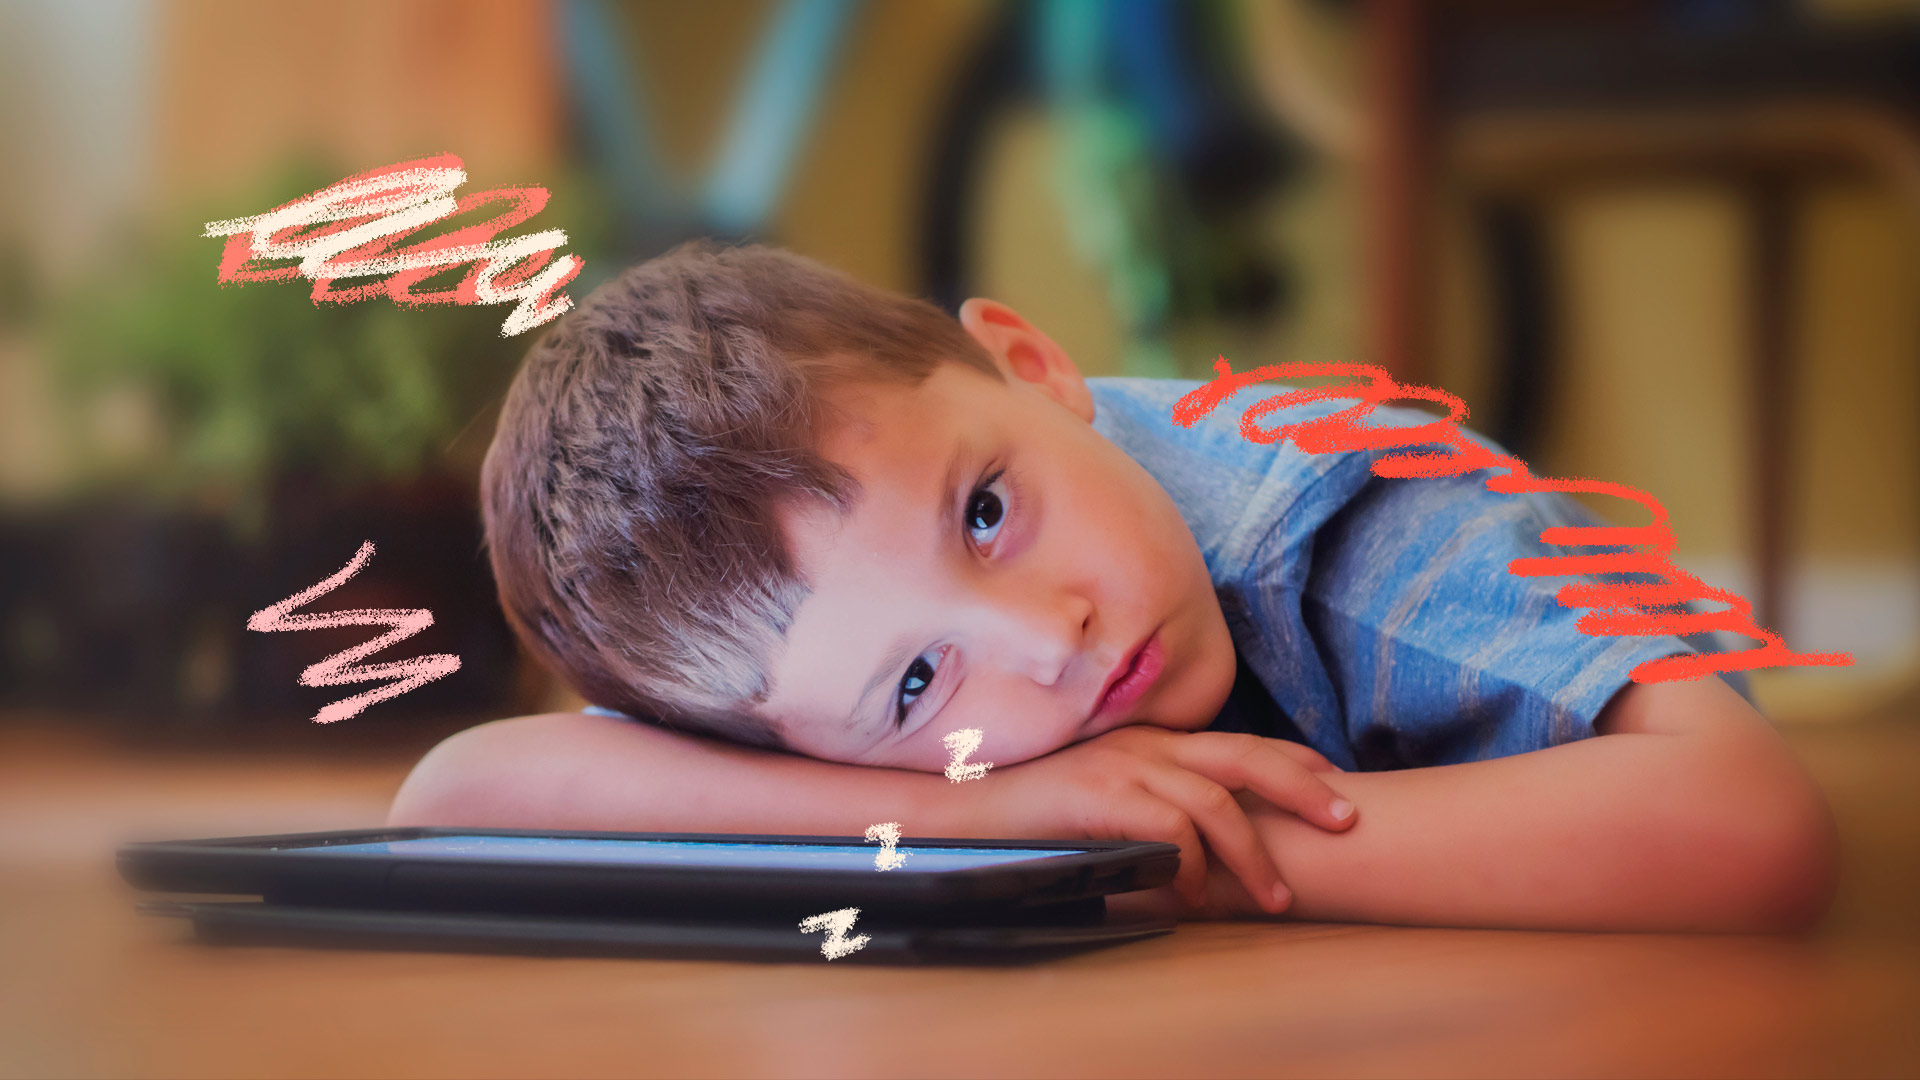 Telas e desenvolvimento das crianças: foto de um menino de cabelo castanho aparece debruçado sobre um tablet e aparenta estar um pouco cansado.